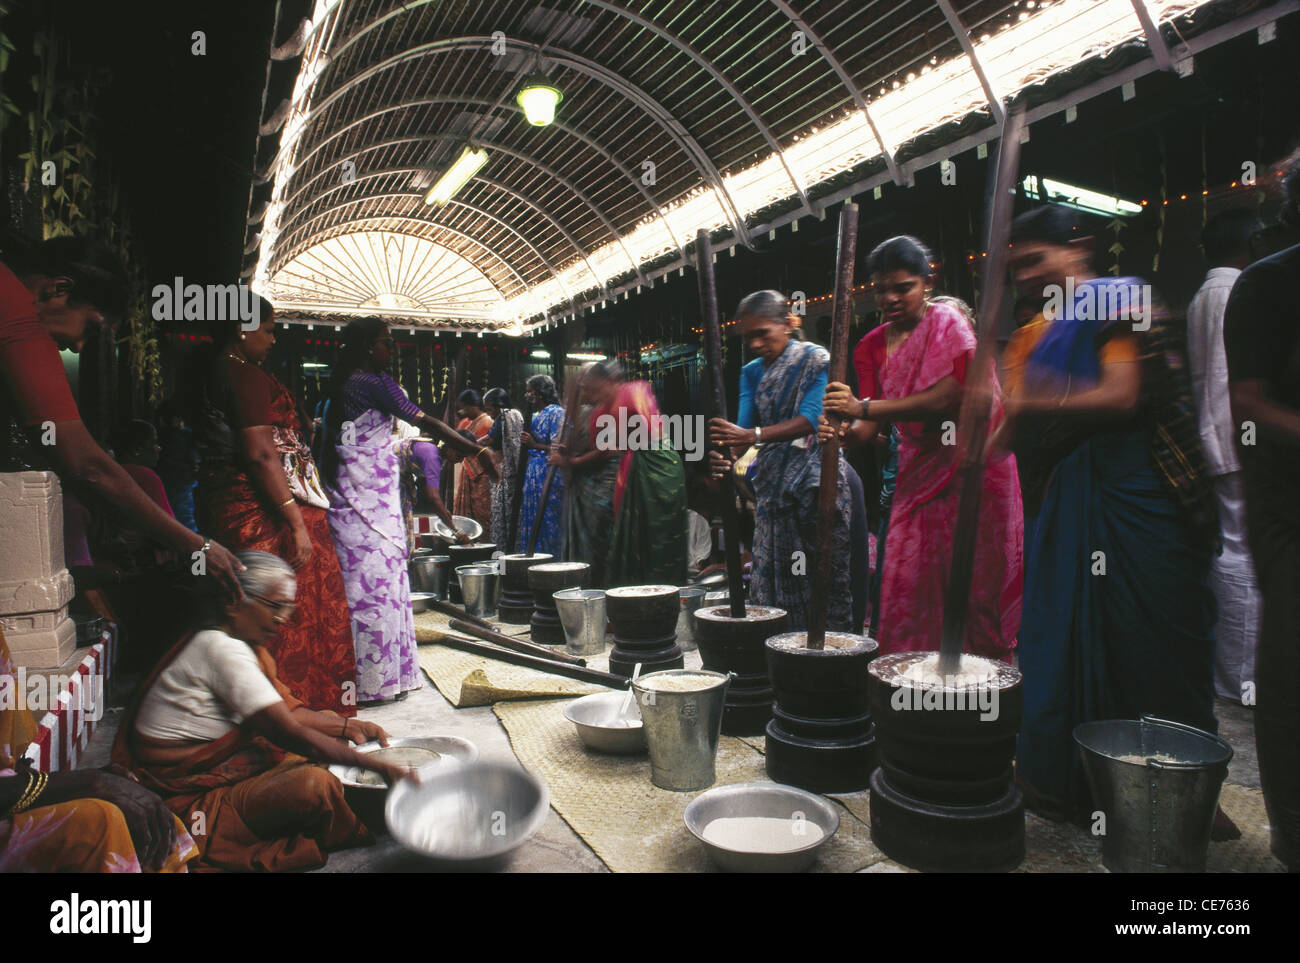 Femmes indiennes cuisinant pour le mariage Nagarahar ; Chettinad ; Chettinadu ; district de Sivaganga ; tamil nadu ; inde ; asie Banque D'Images